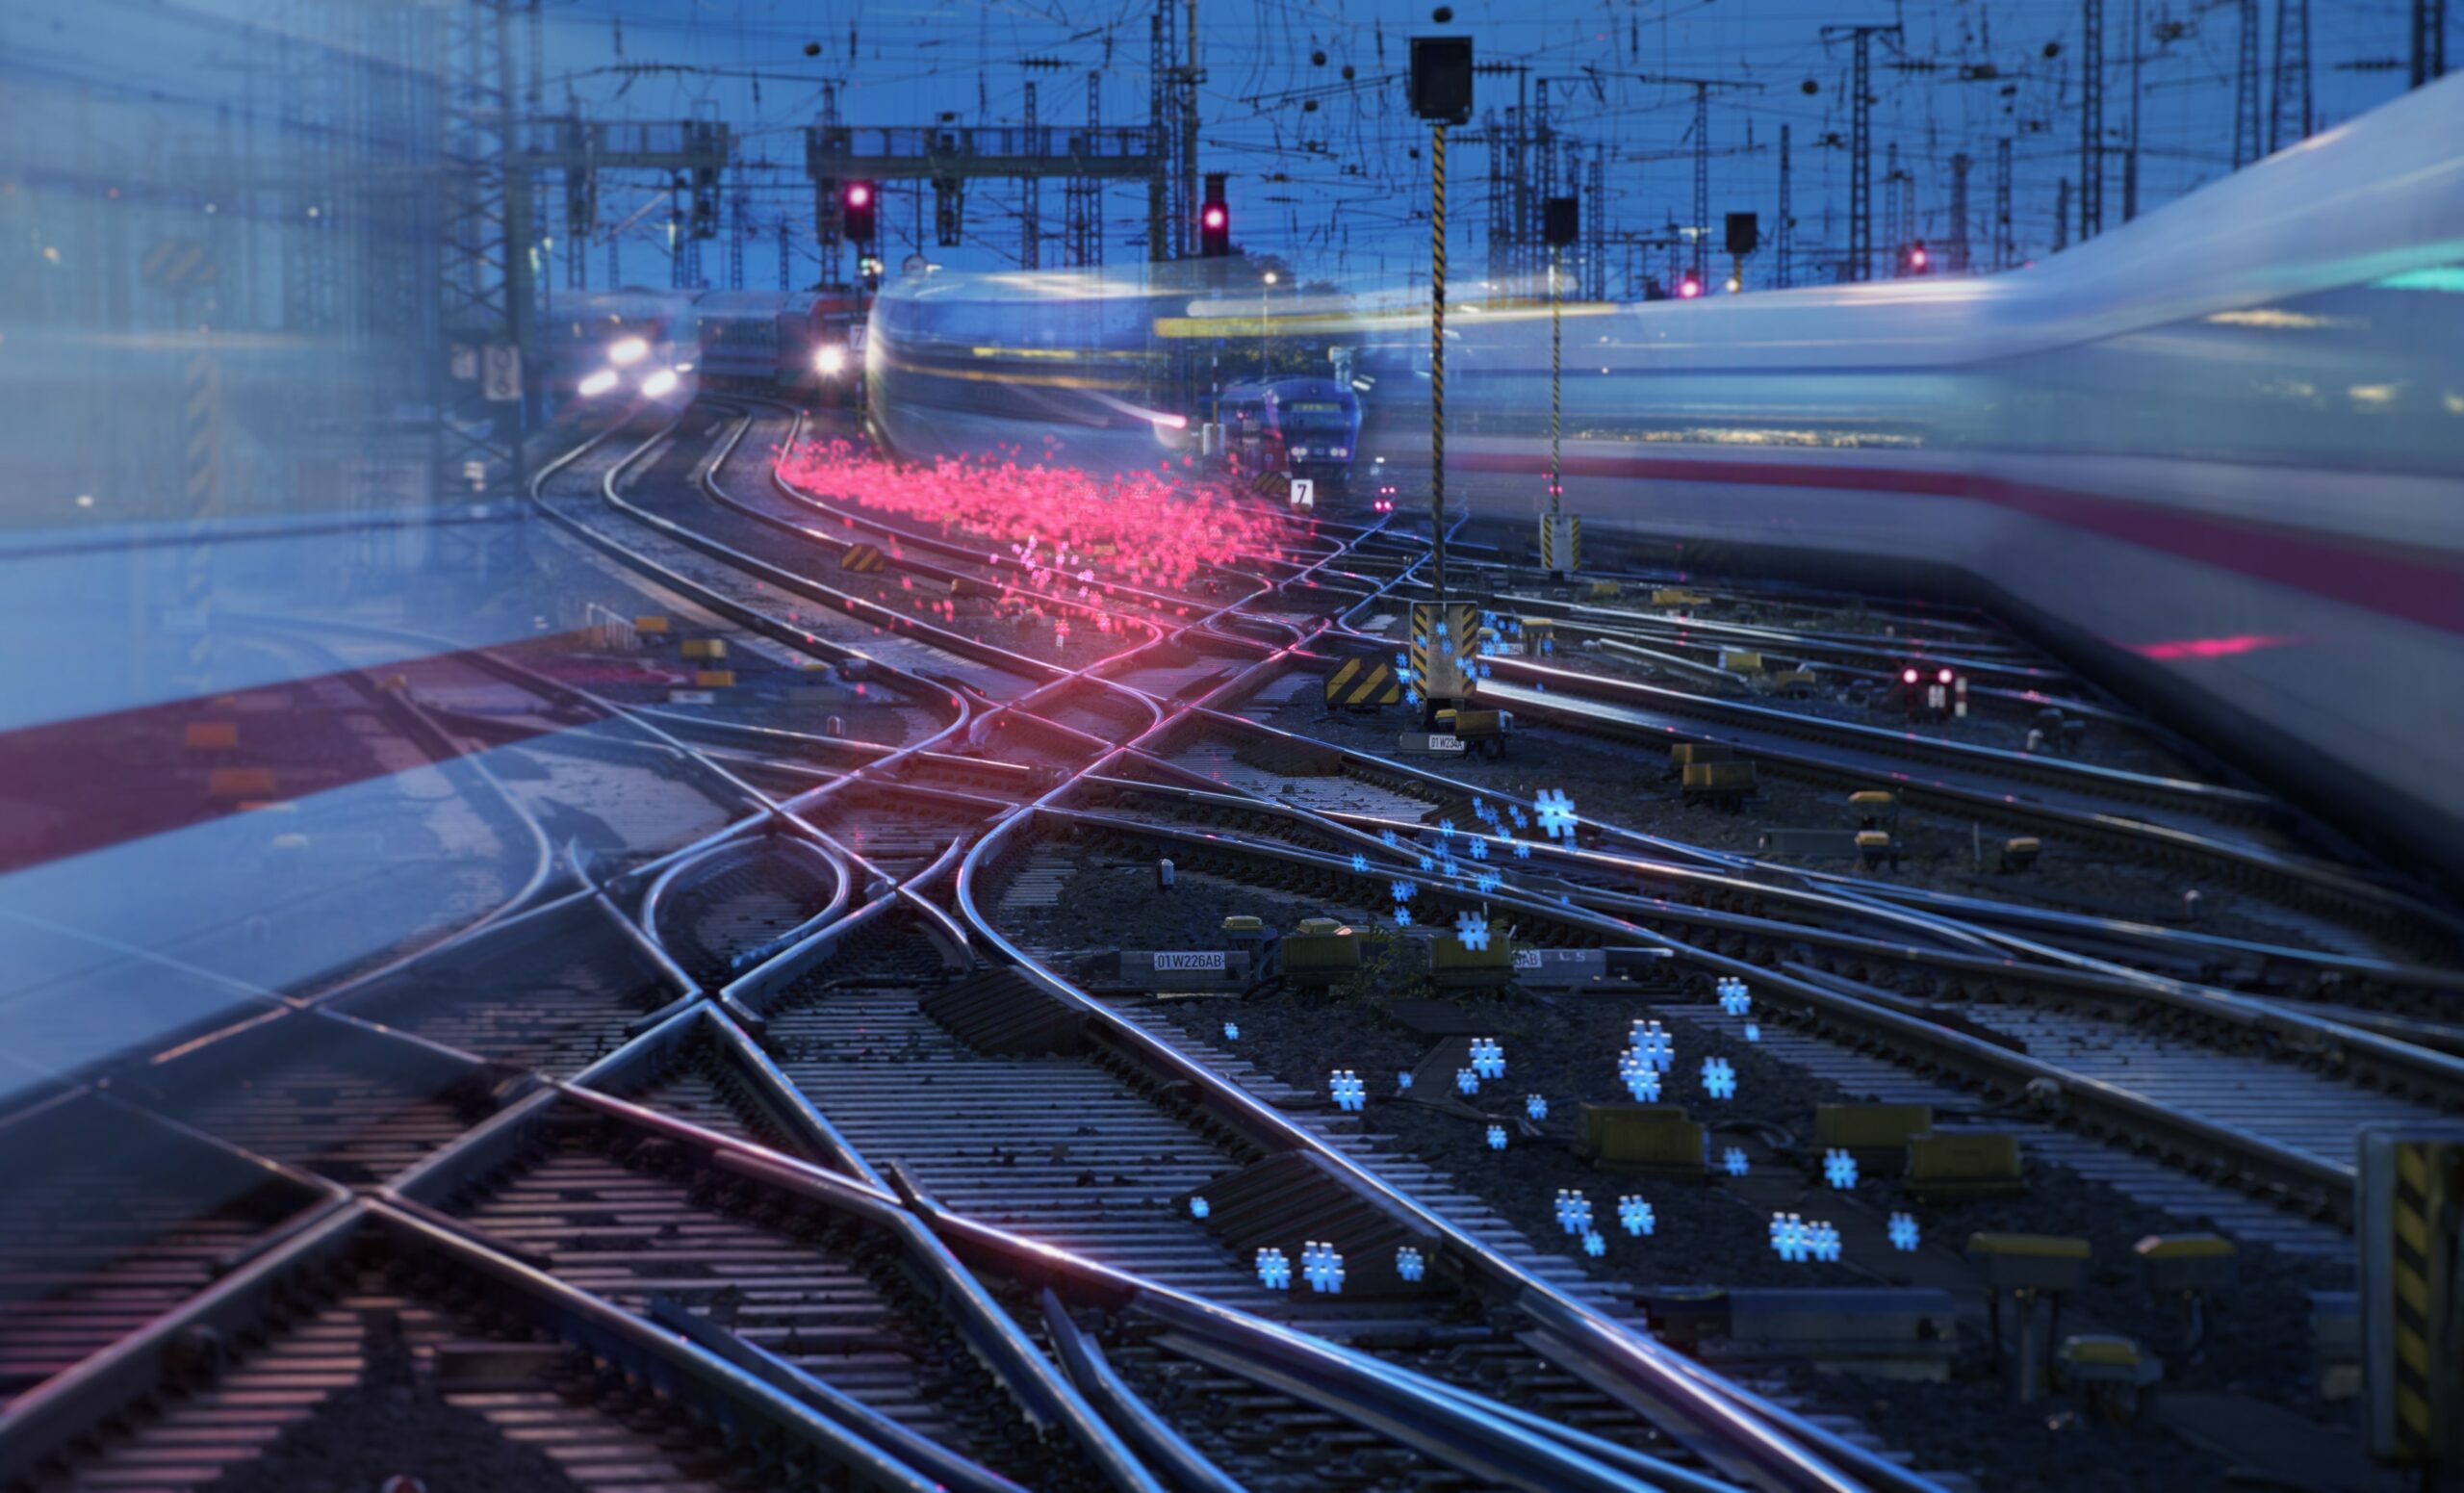 Станция железнодорожная работает. Цифровая Железнодорожная станция проект РЖД. Инновации на Железнодорожном транспорте. Инфраструктура железных дорог. Железная дорога инновации.